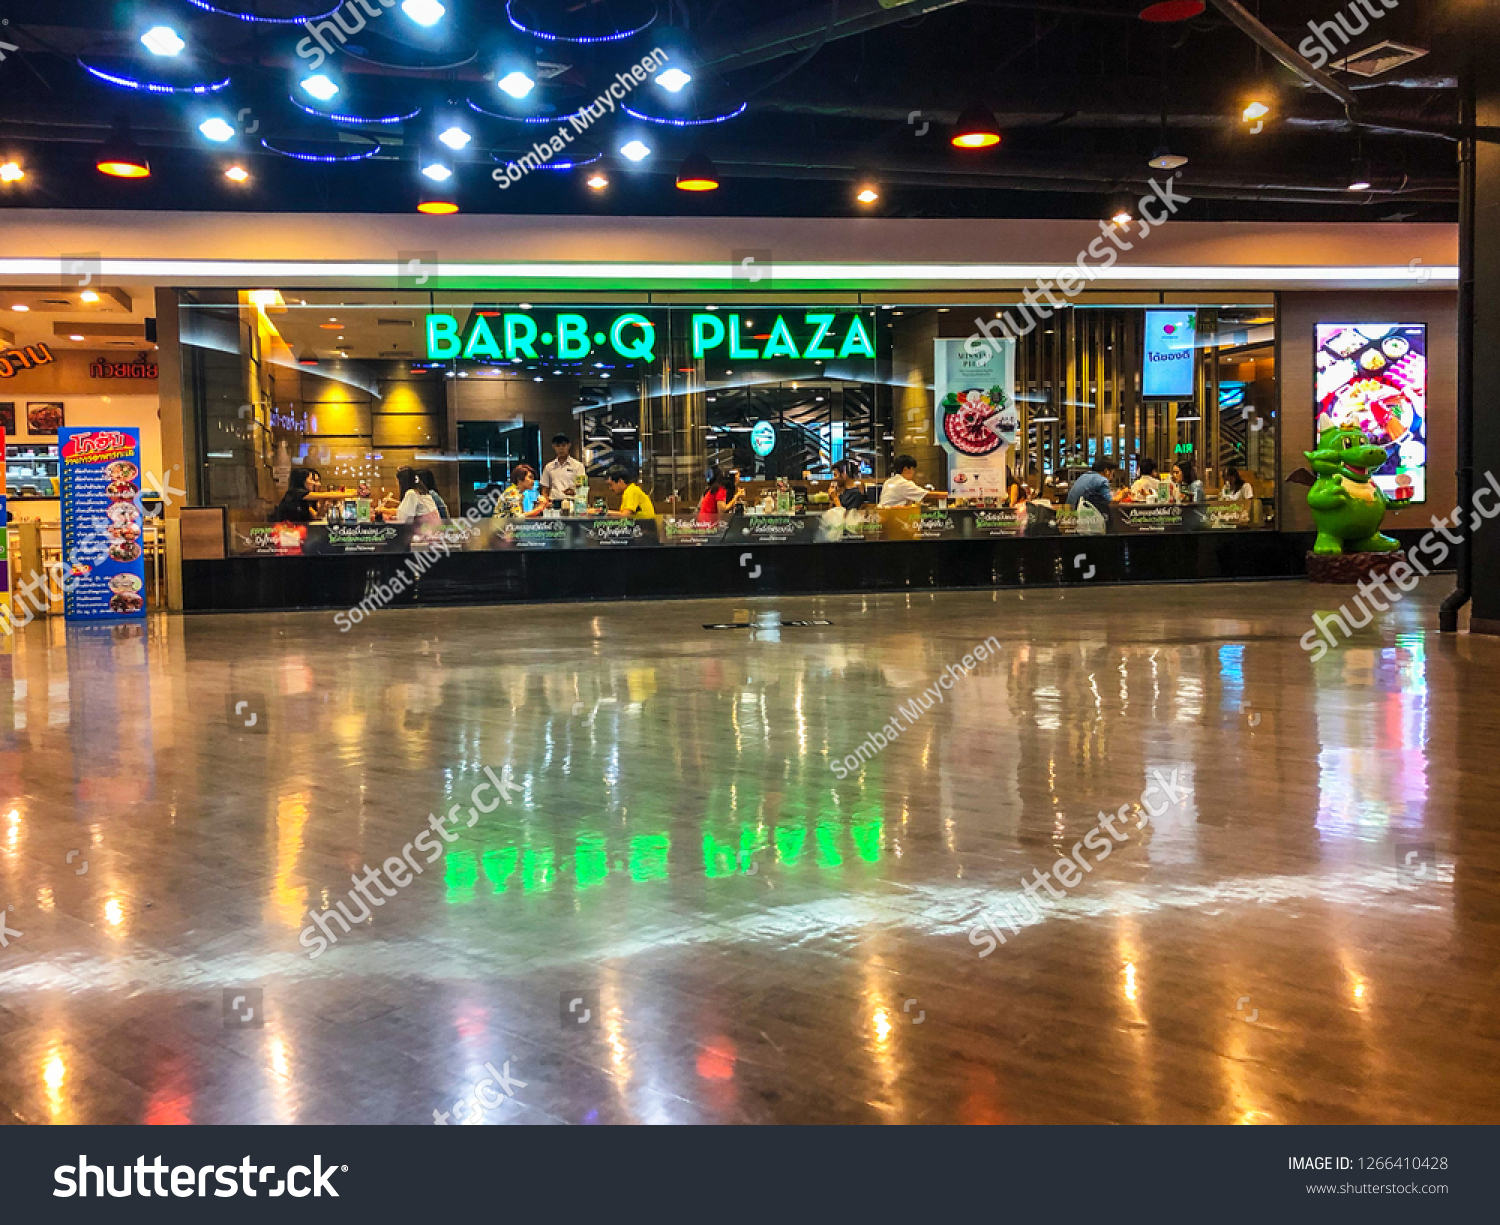 Bar bq plaza